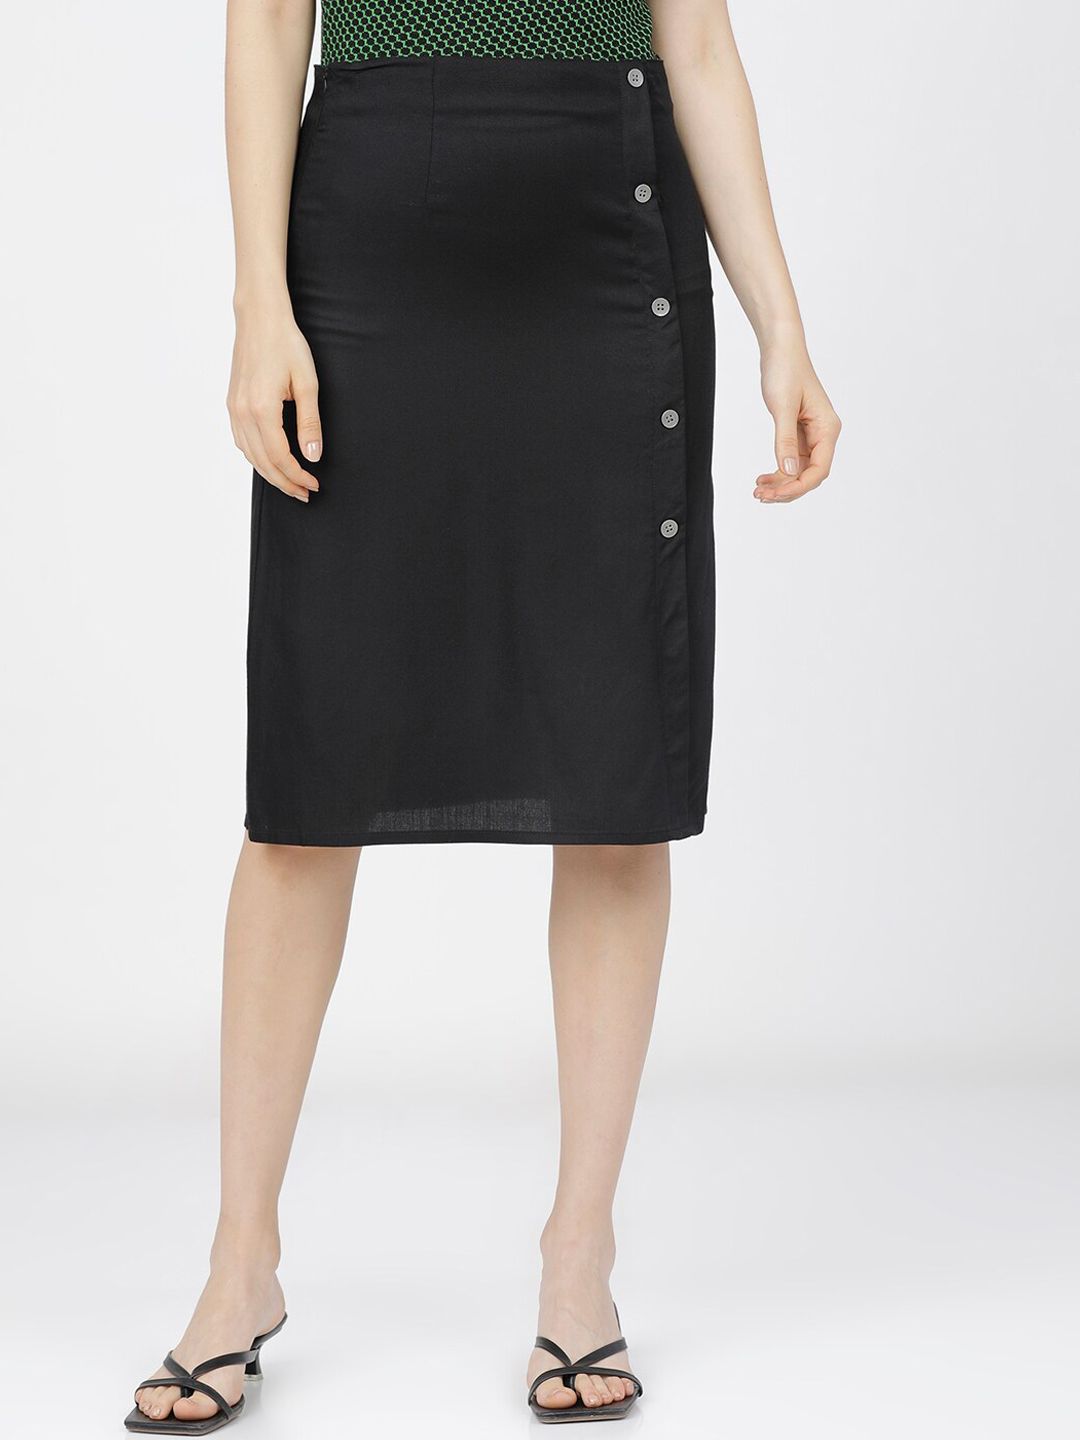 Tokyo Talkies Women Black Solid Pencil Knee-Length Skirt Price in India